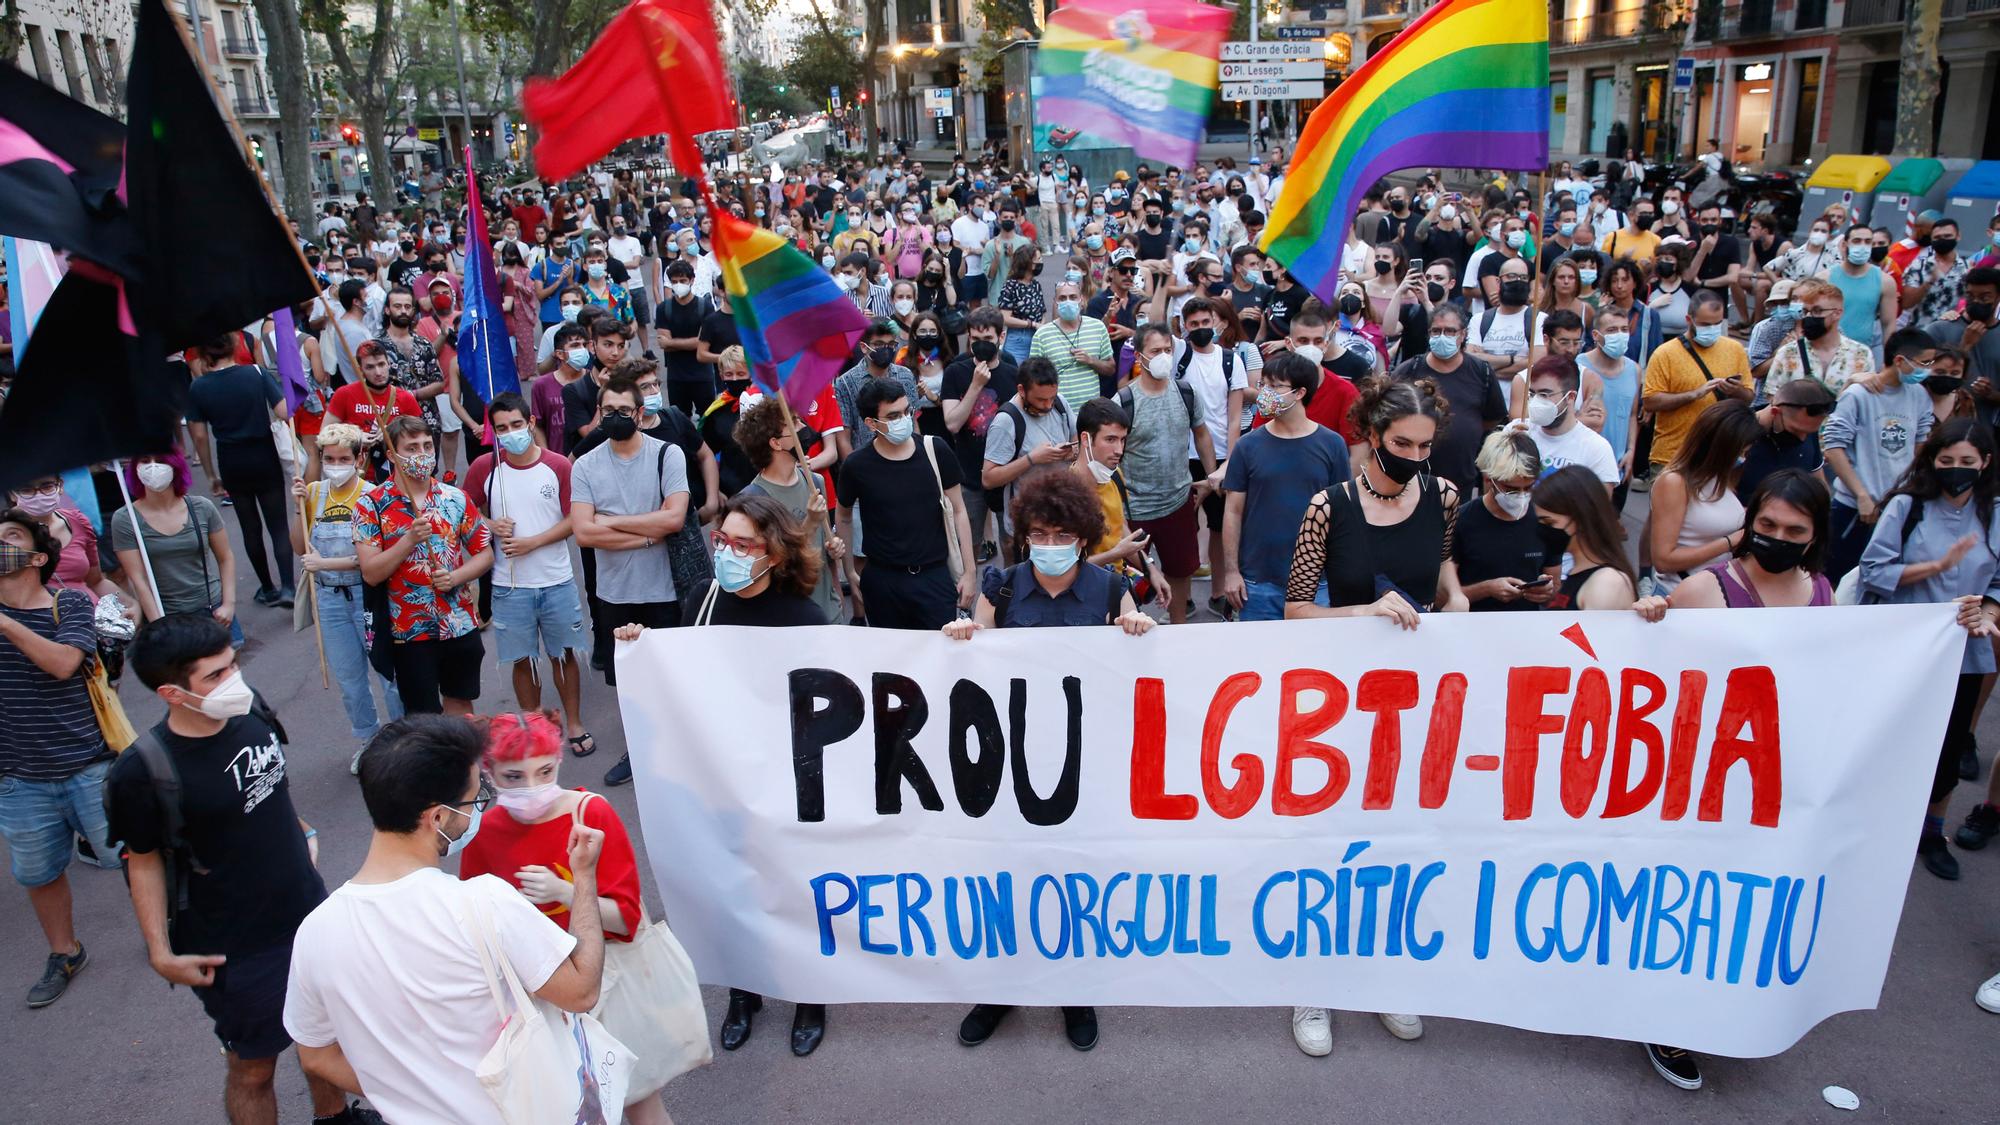 Manifestación alternativa contra las agresiones LGTB-fóbicas, en Barcelona.